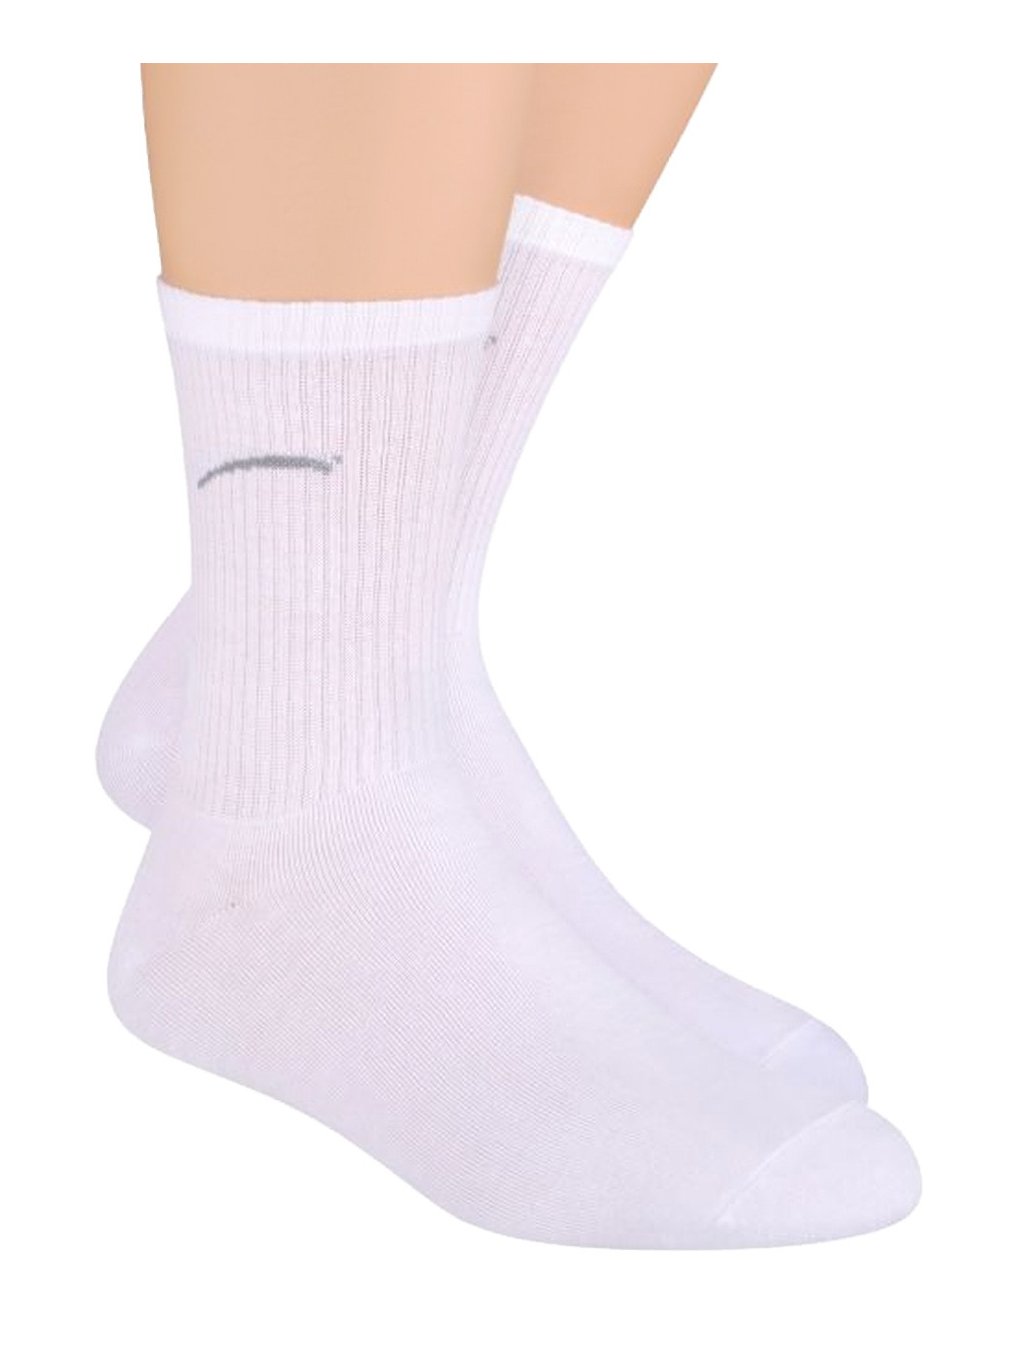 Chlapecké klasické ponožky jednobarevné s logem 022/1 Steven